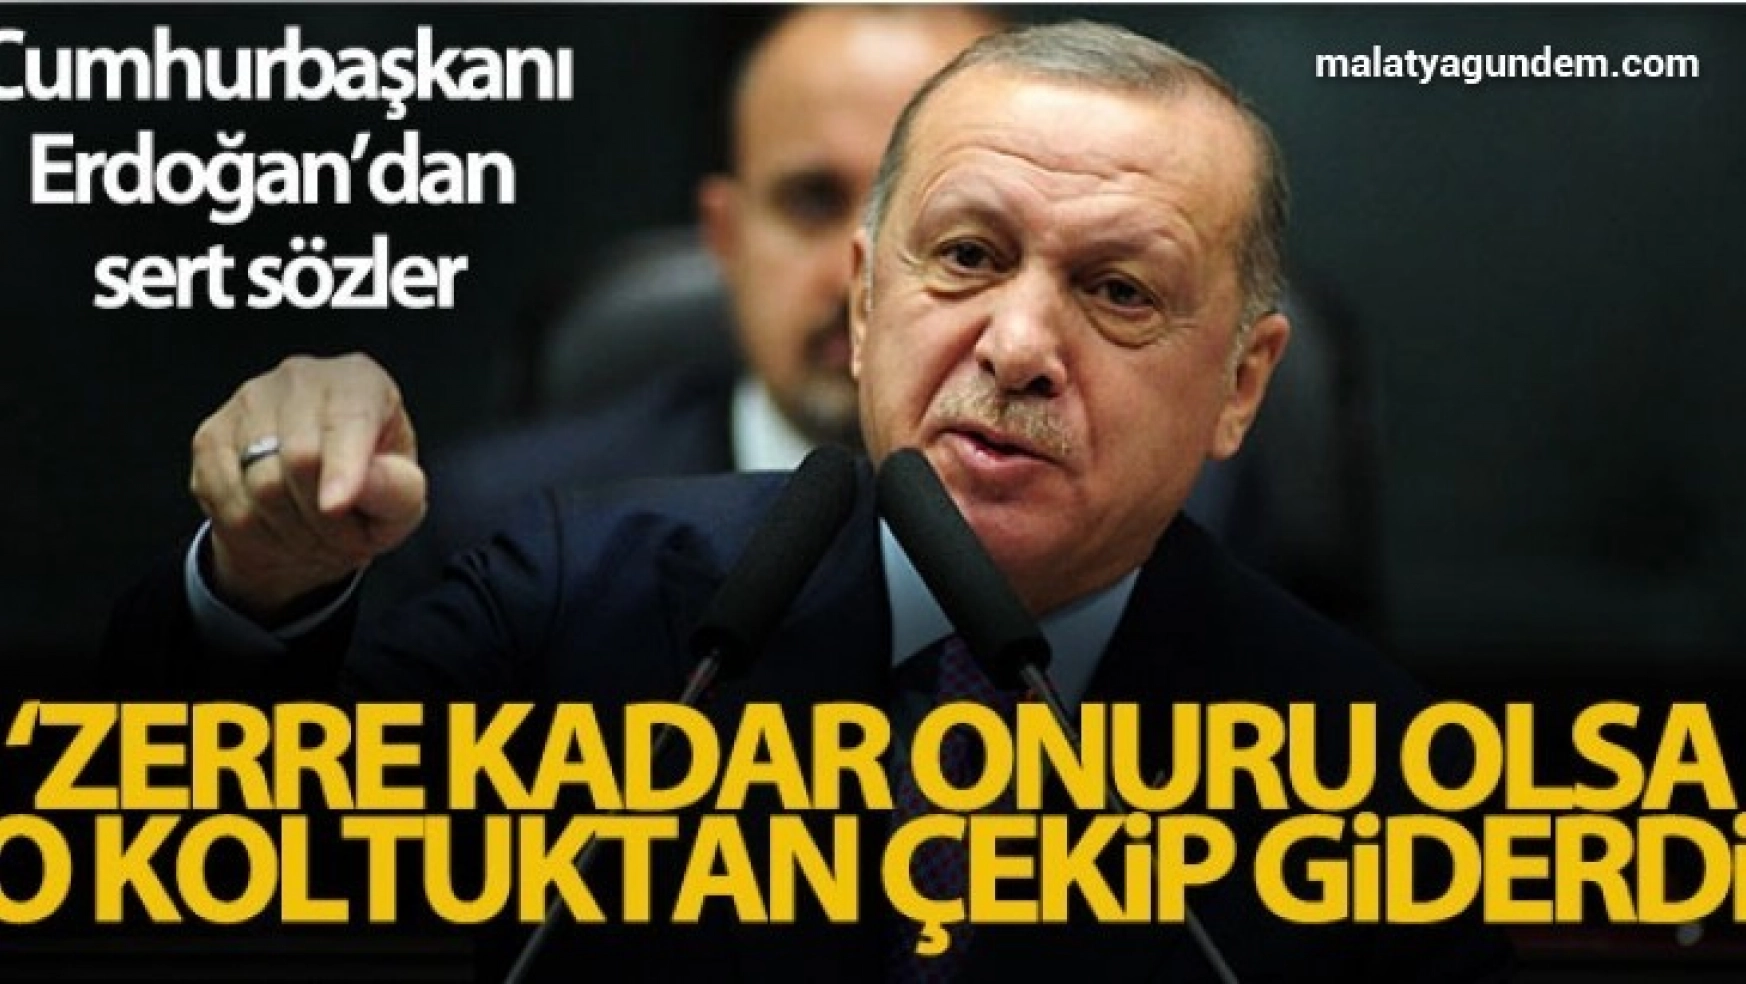 Cumhurbaşkanı Erdoğan, 'Zerre kadar onuru olsa o koltuktan çekip giderdi'